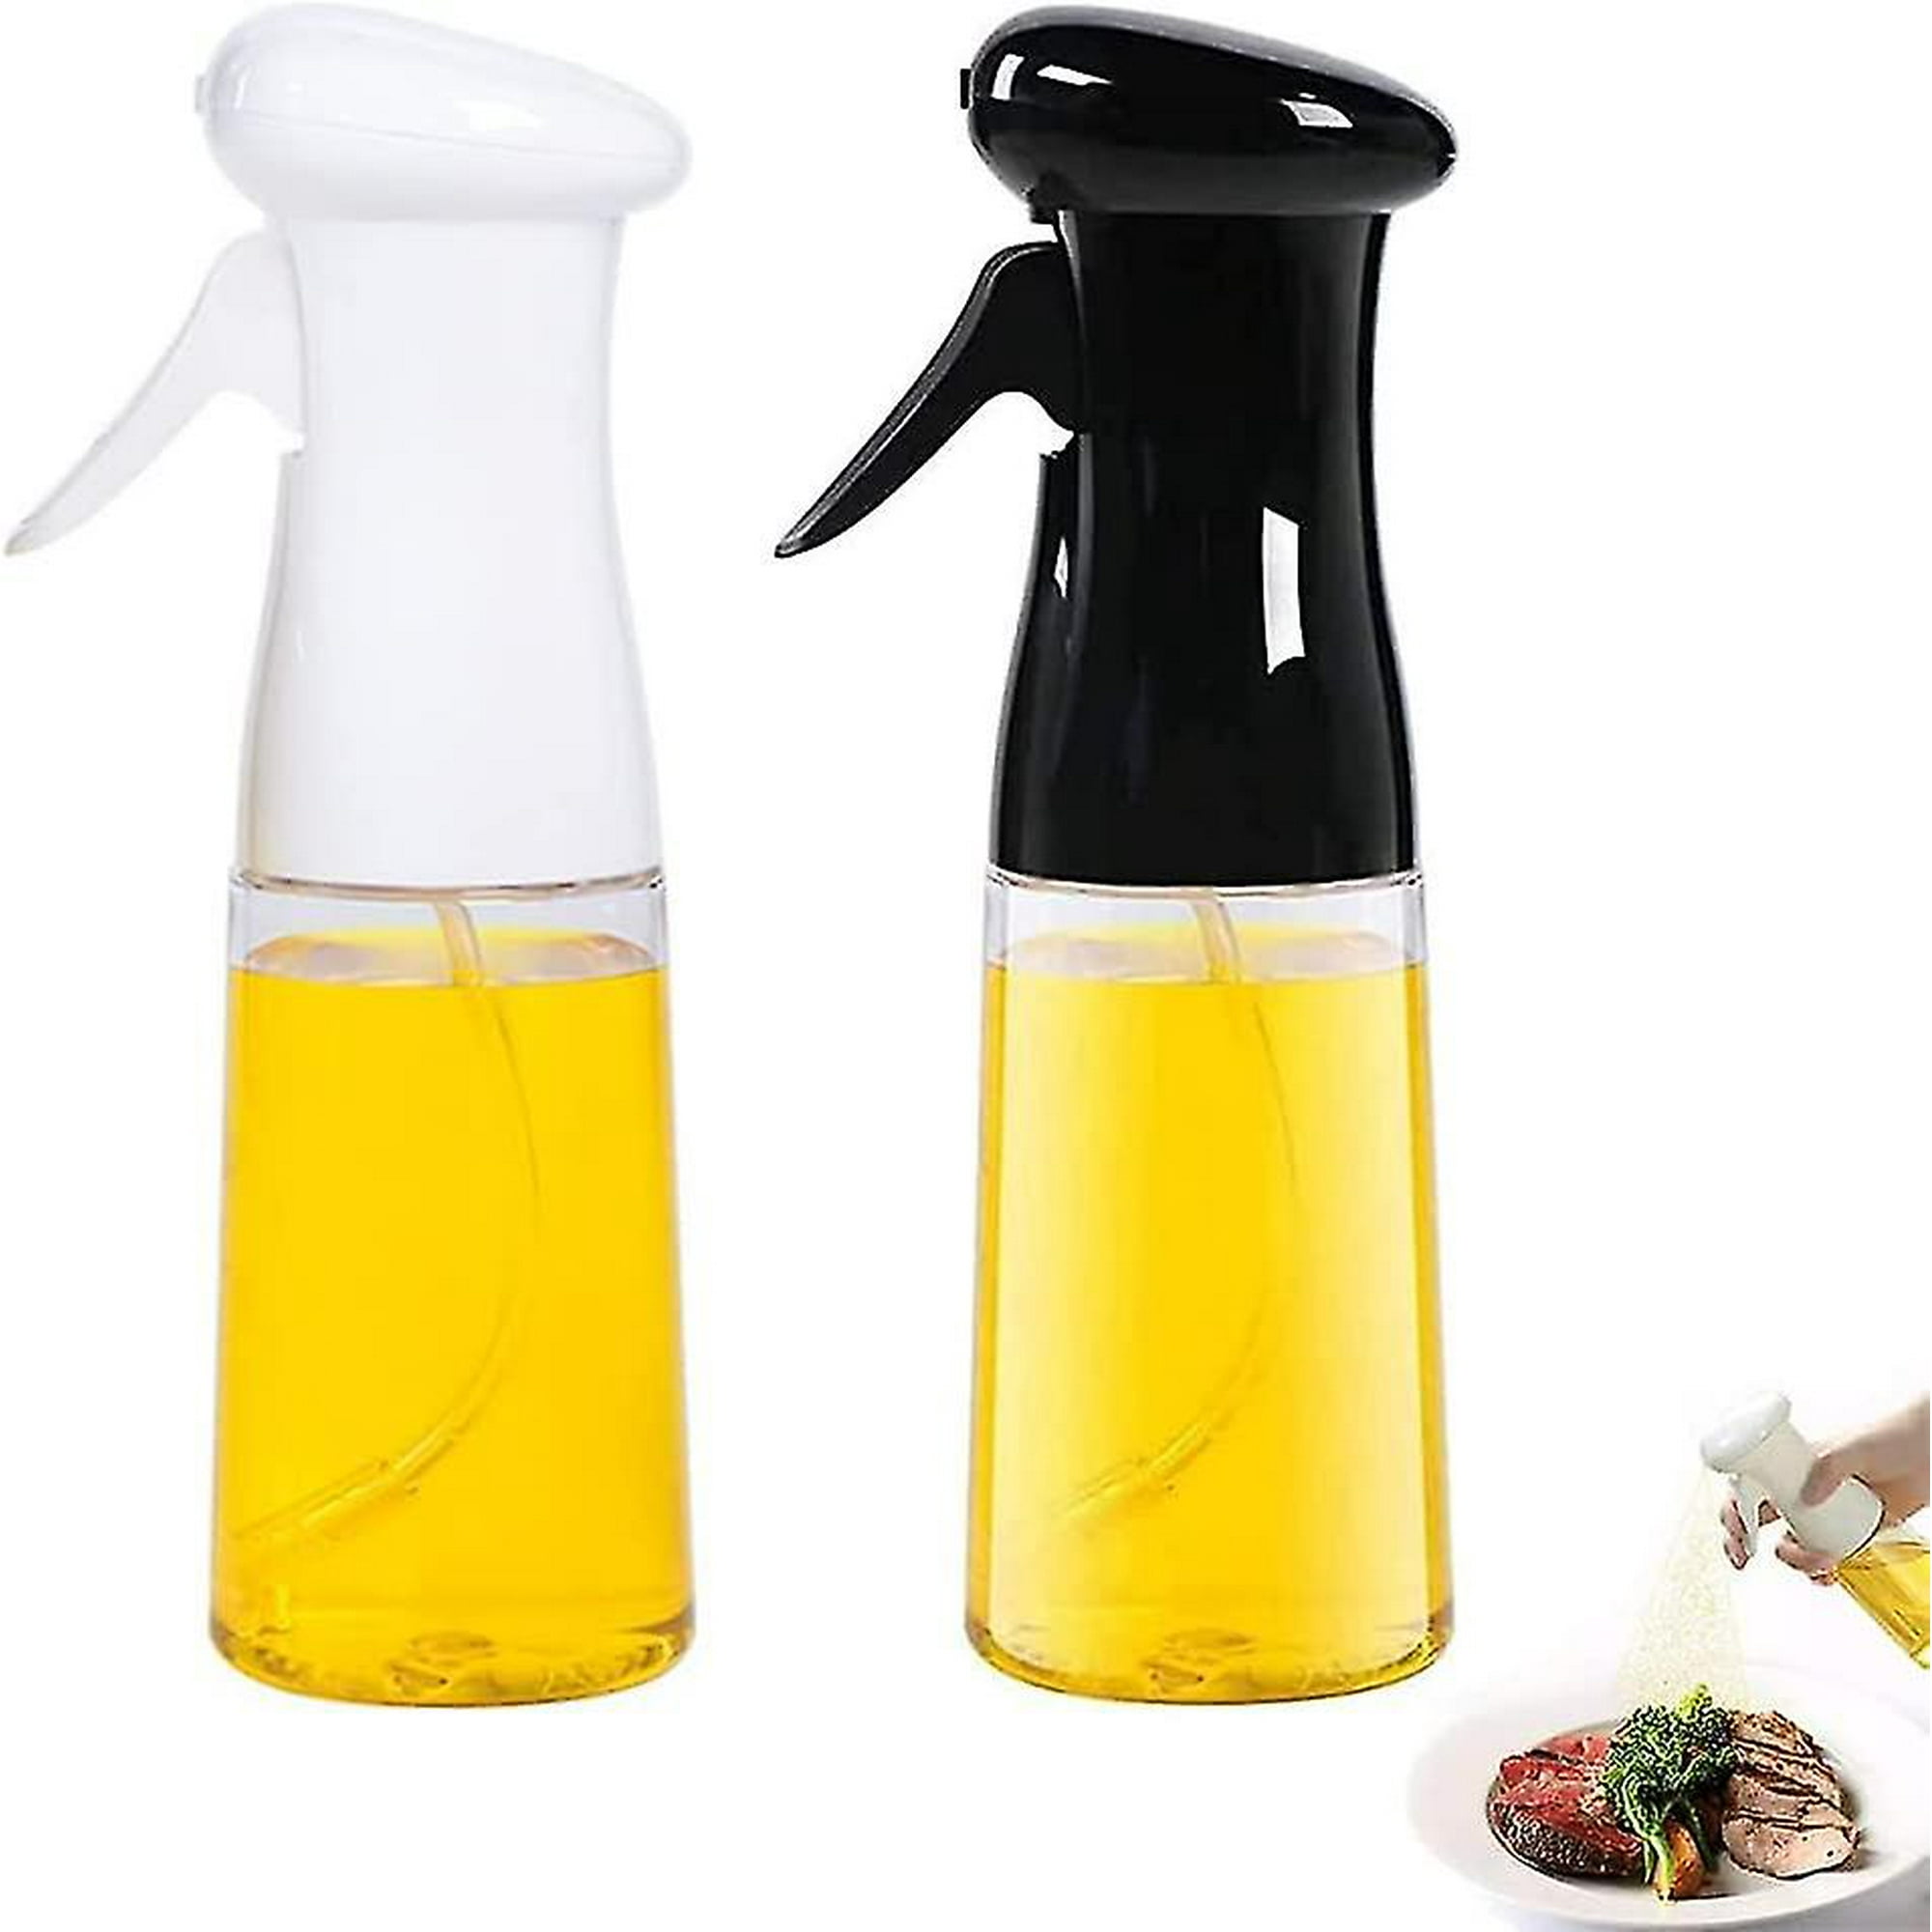 Botella de Spray de aceite de cocina de 200ml, pulverizador de ácido de  Oliva de plástico para barbacoa, dispensador de aceite para hornear,  accesorios de nebulizador, utensilios de cocina para barbacoa 